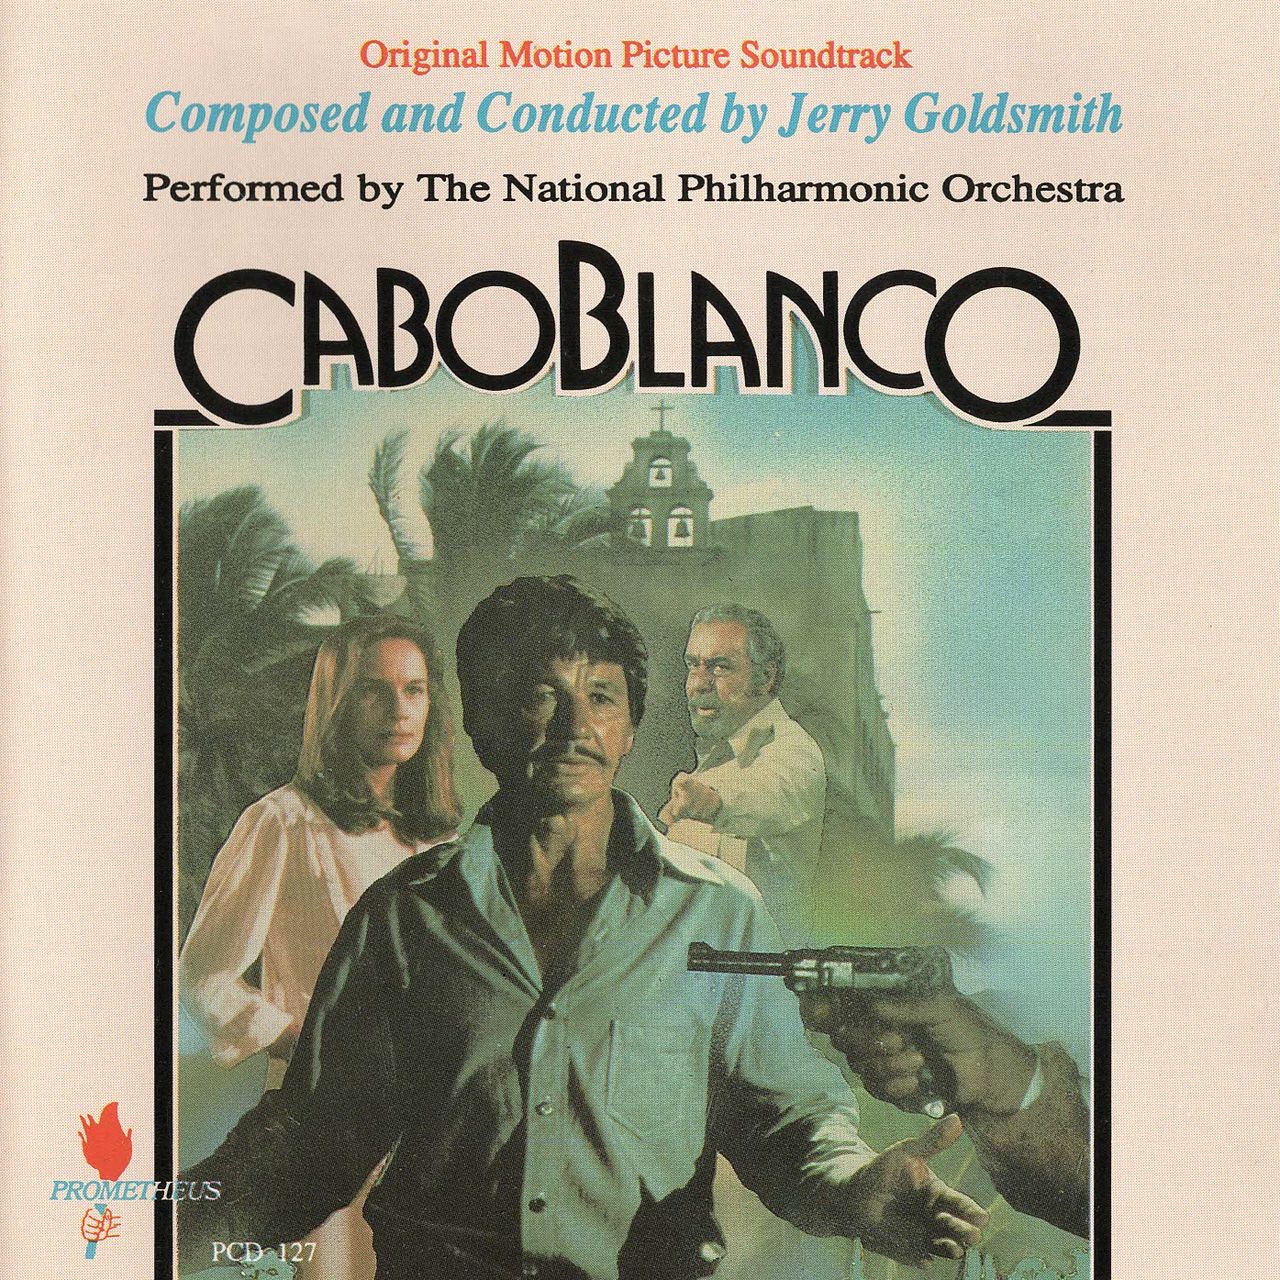 Caboblanco album art